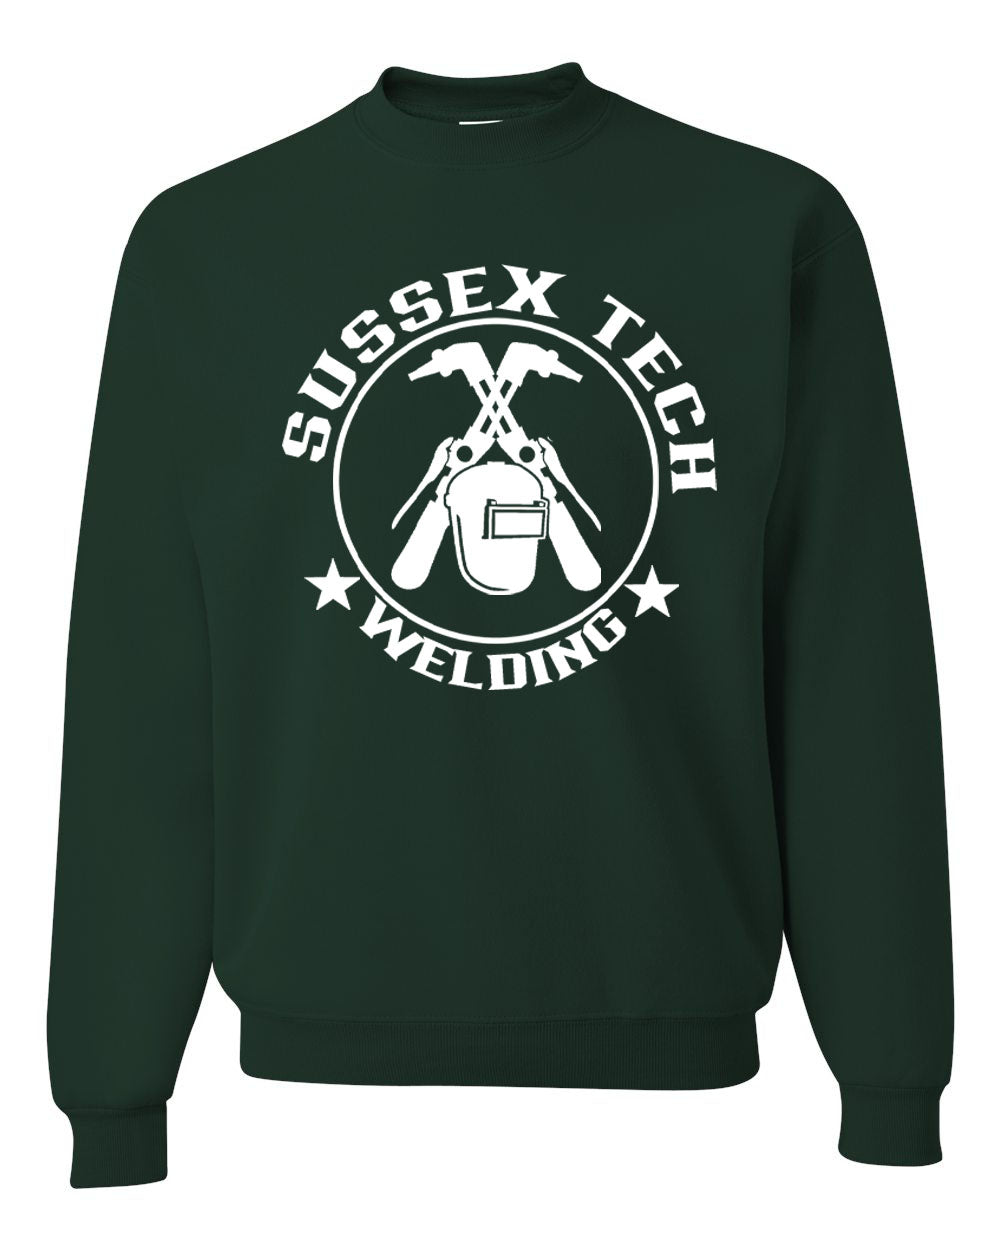 Sussex Tech Welding Design 6 non hooded sweatshirt